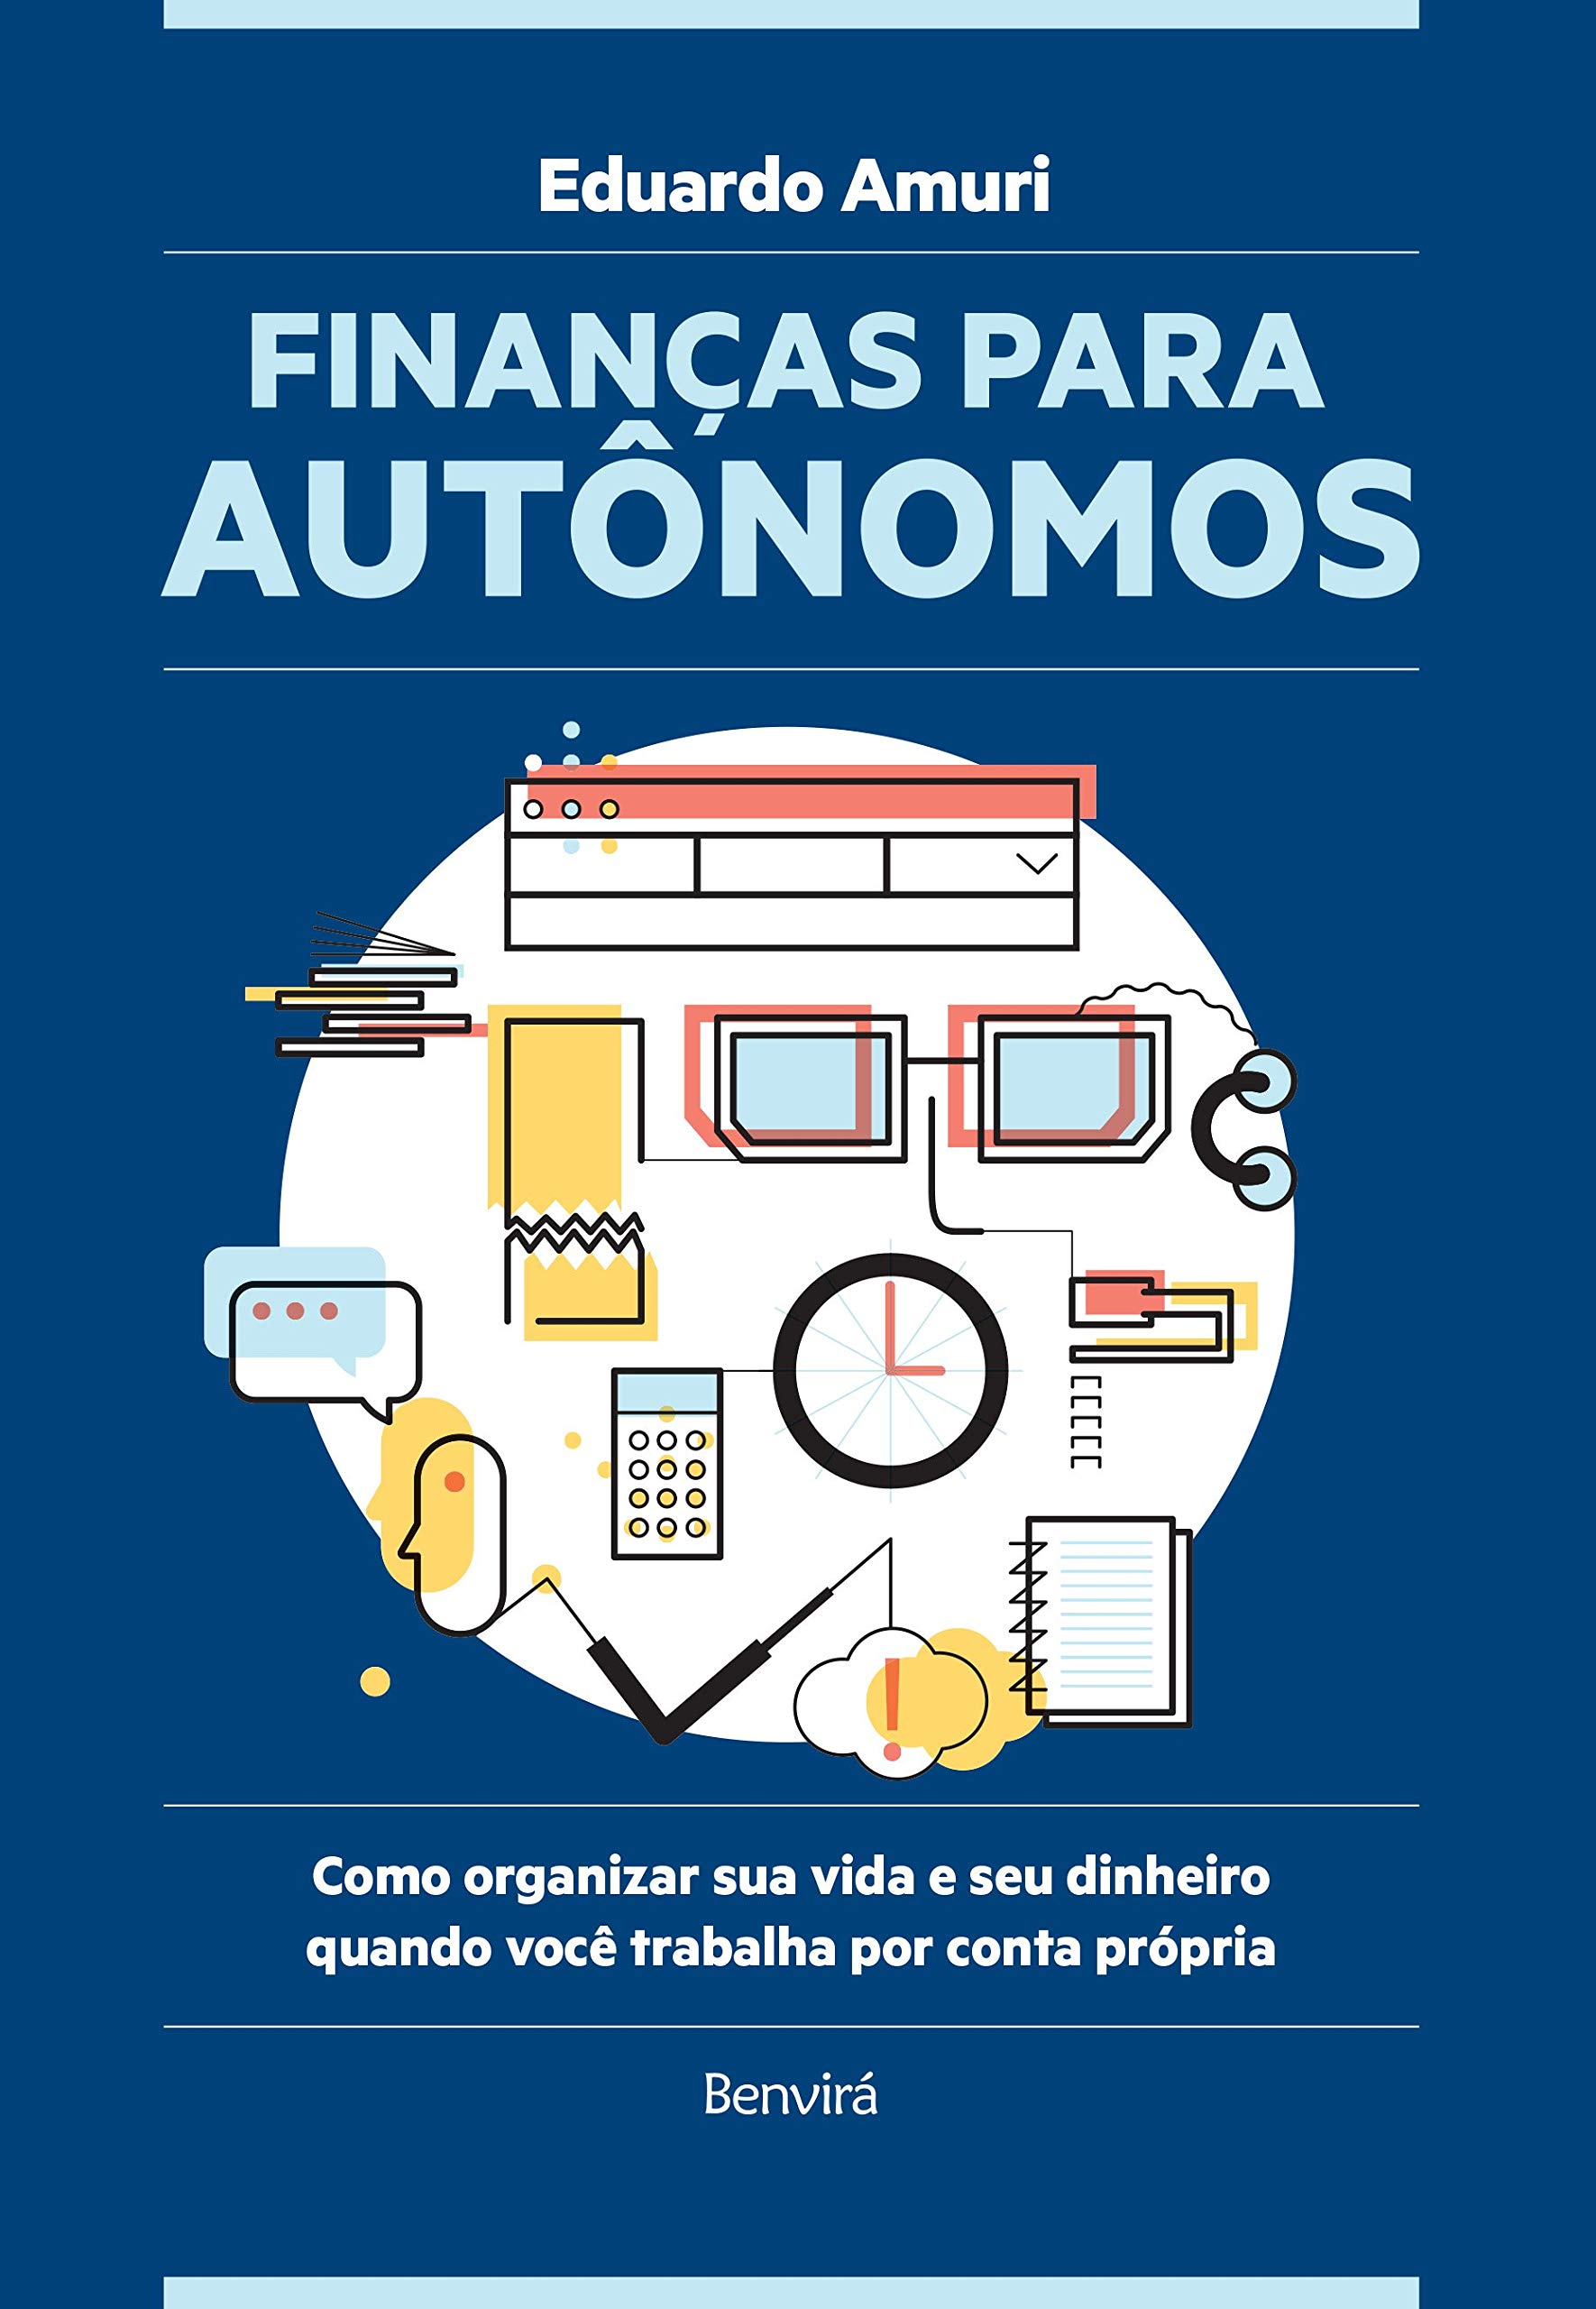 Eduardo Amuri: Finanças Para Autônomos (Português language, 2018, Benvirá)